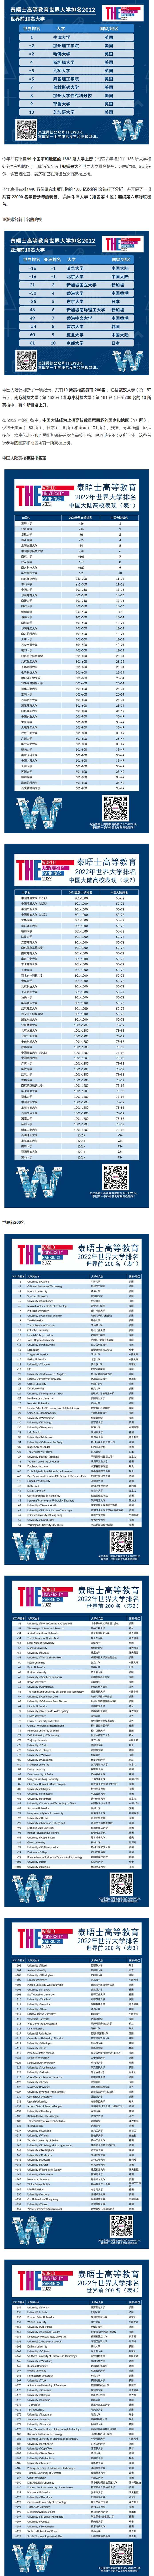 2022泰晤士高等教育世界大学排名_副本.jpg